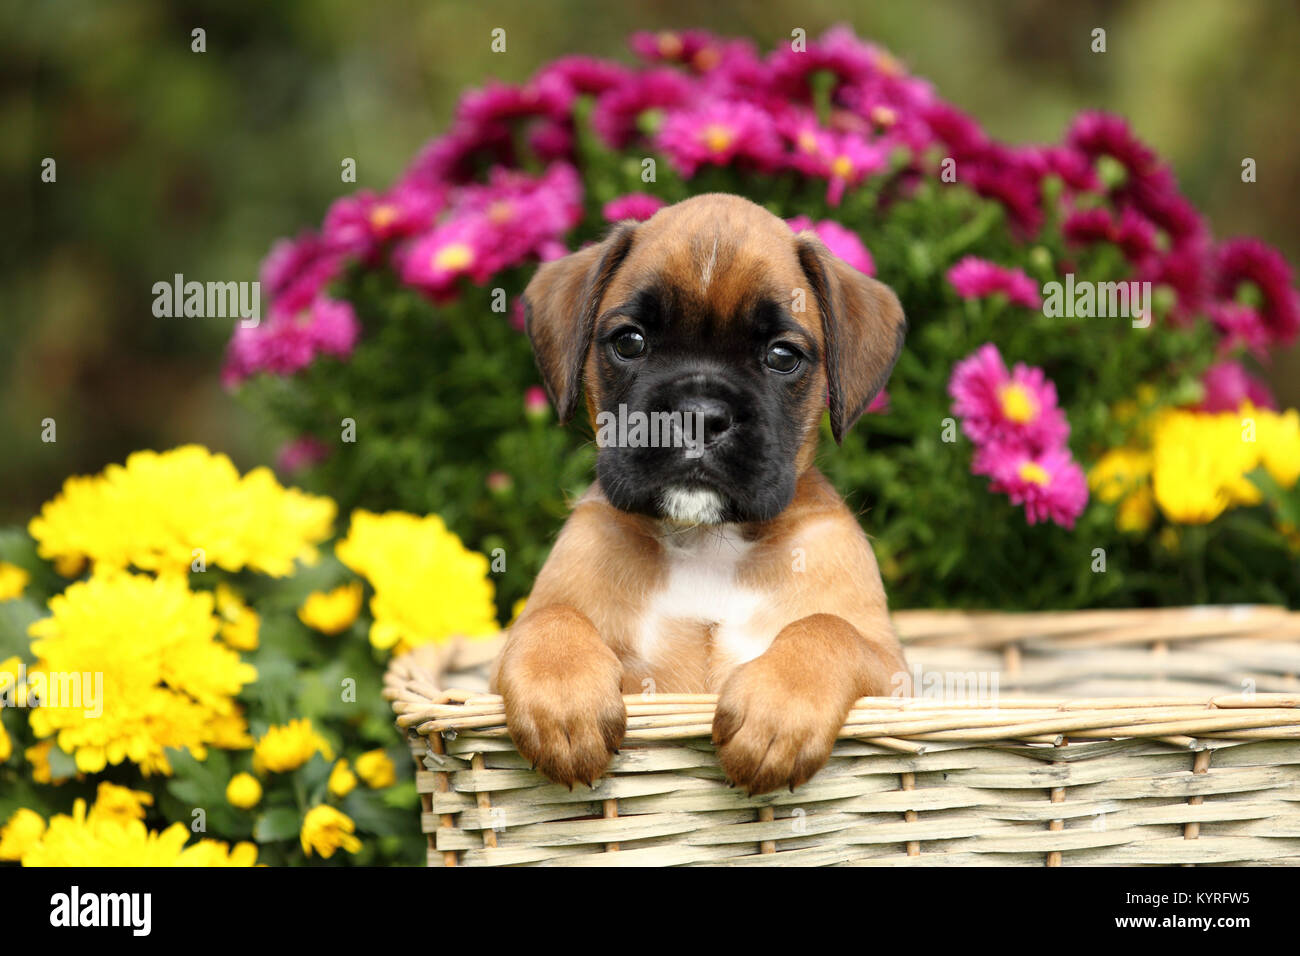 Boxeur allemand. Chiot tricolore (6 semaines) dans un panier en osier à côté des fleurs. Allemagne Banque D'Images